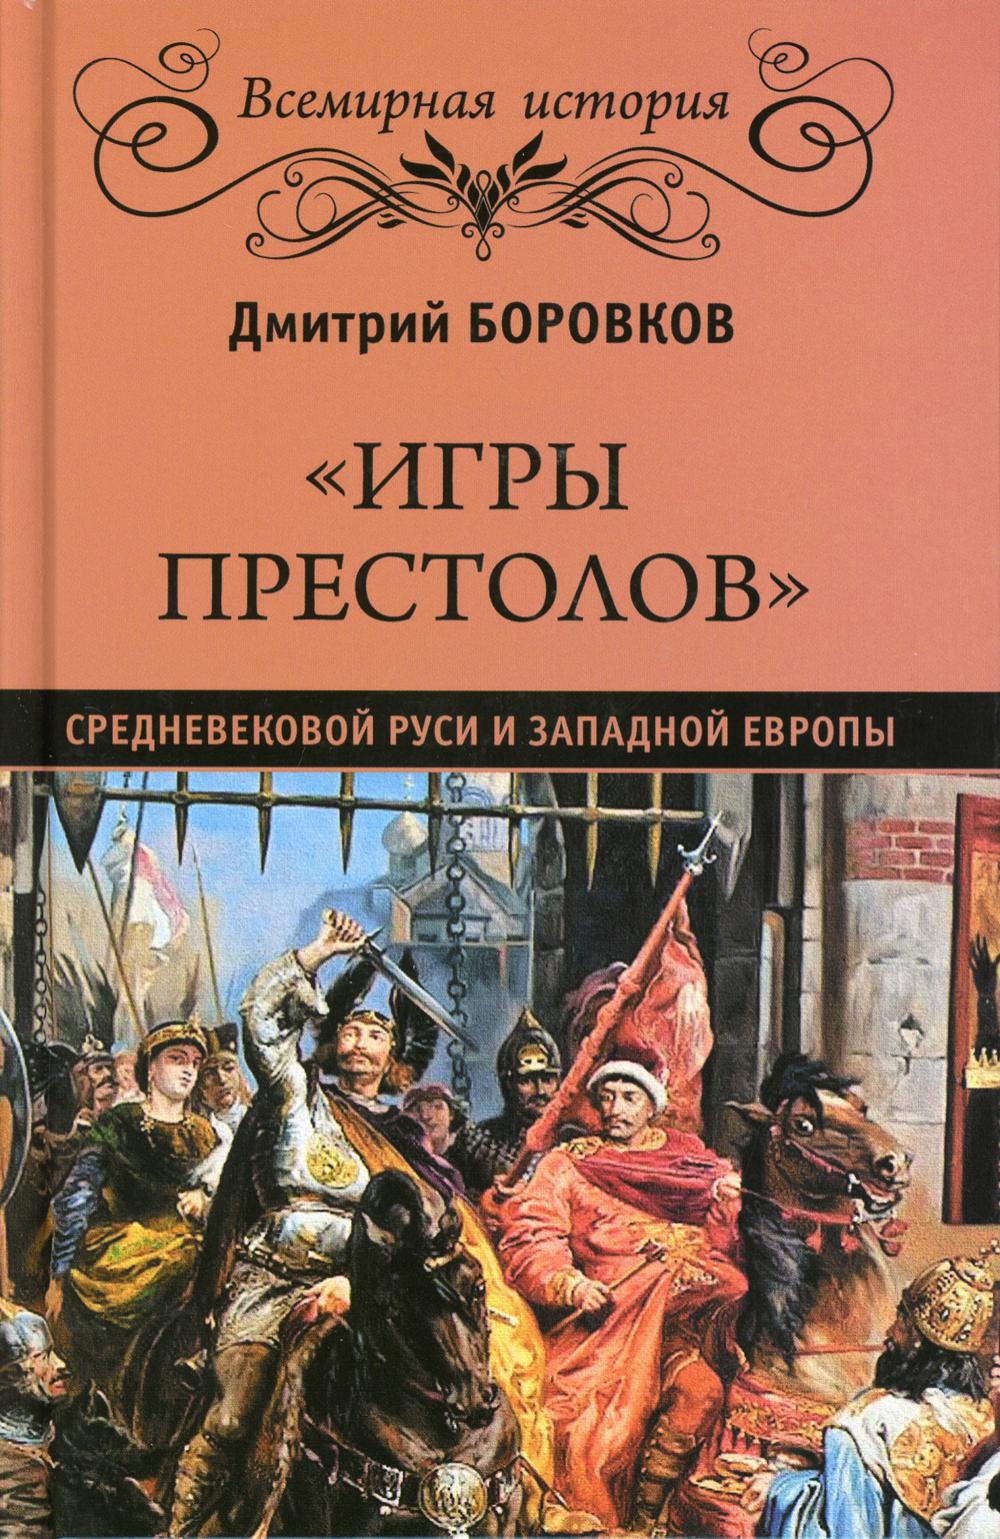 Игры престолов средневековой Руси и Западной Европы